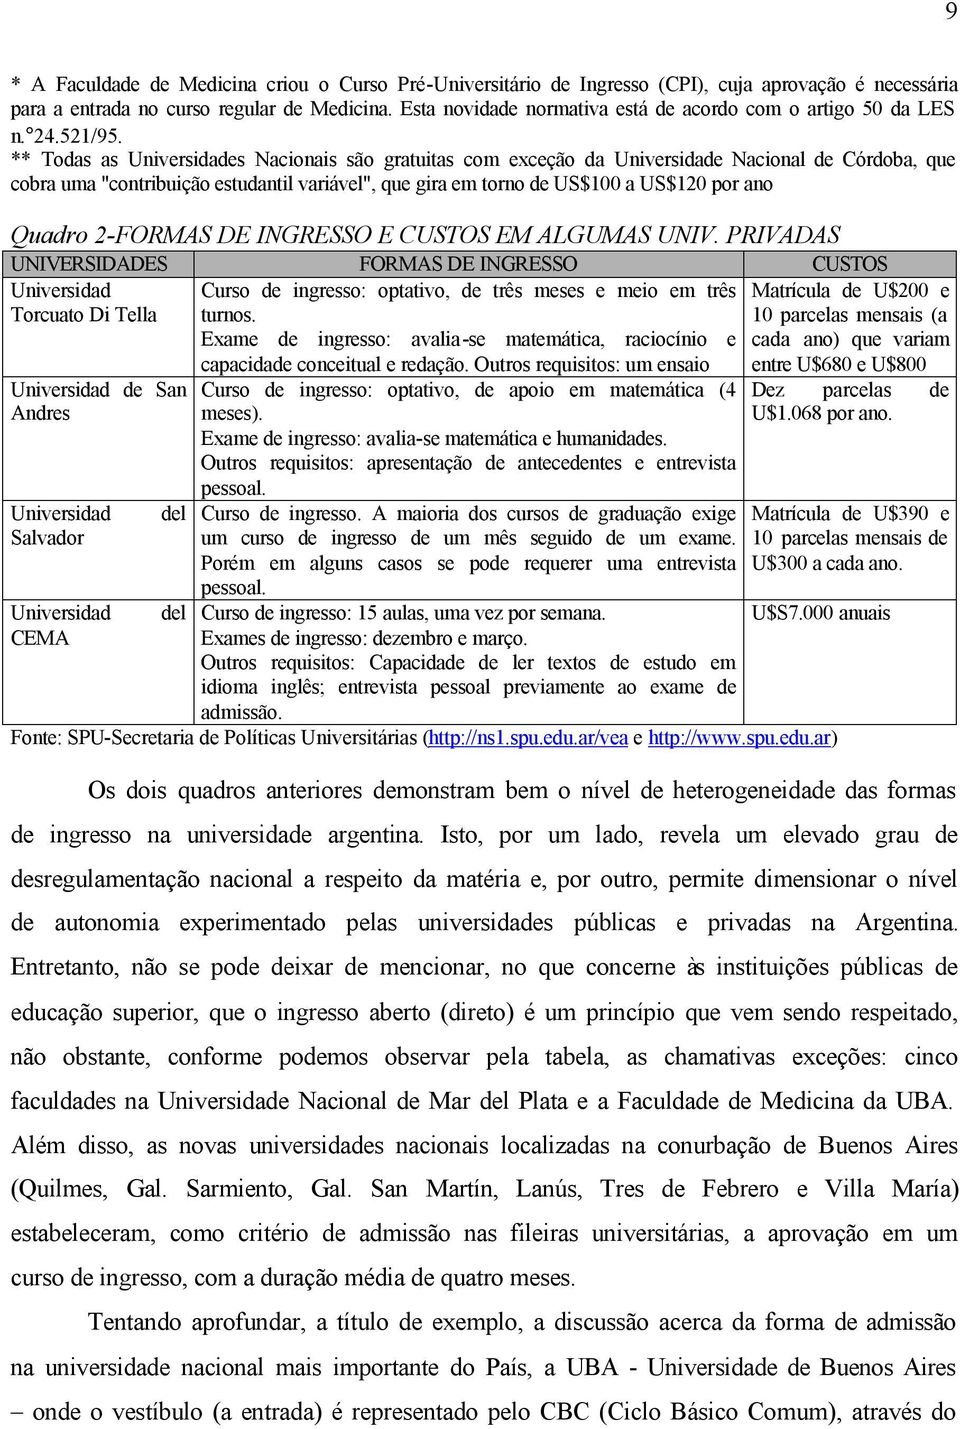 ** Todas as Universidades Nacionais são gratuitas com exceção da Universidade Nacional de Córdoba, que cobra uma "contribuição estudantil variável", que gira em torno de US$100 a US$120 por ano